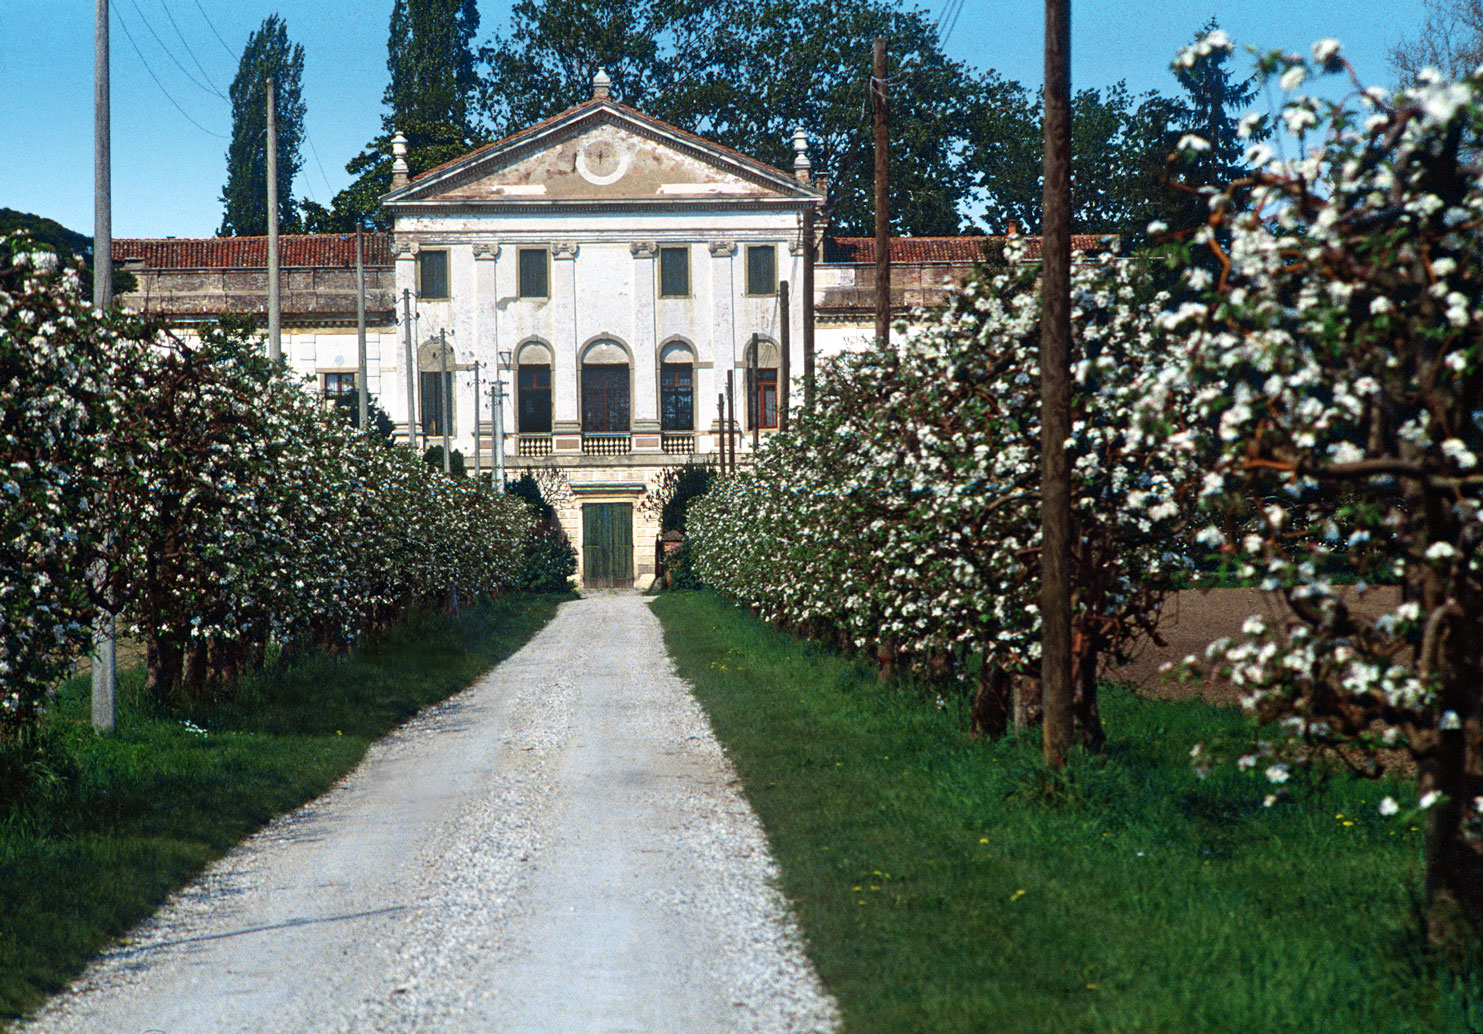 Due Carrare (Pd), Villa Dolfin Dal Martello, detta "La Mincana".